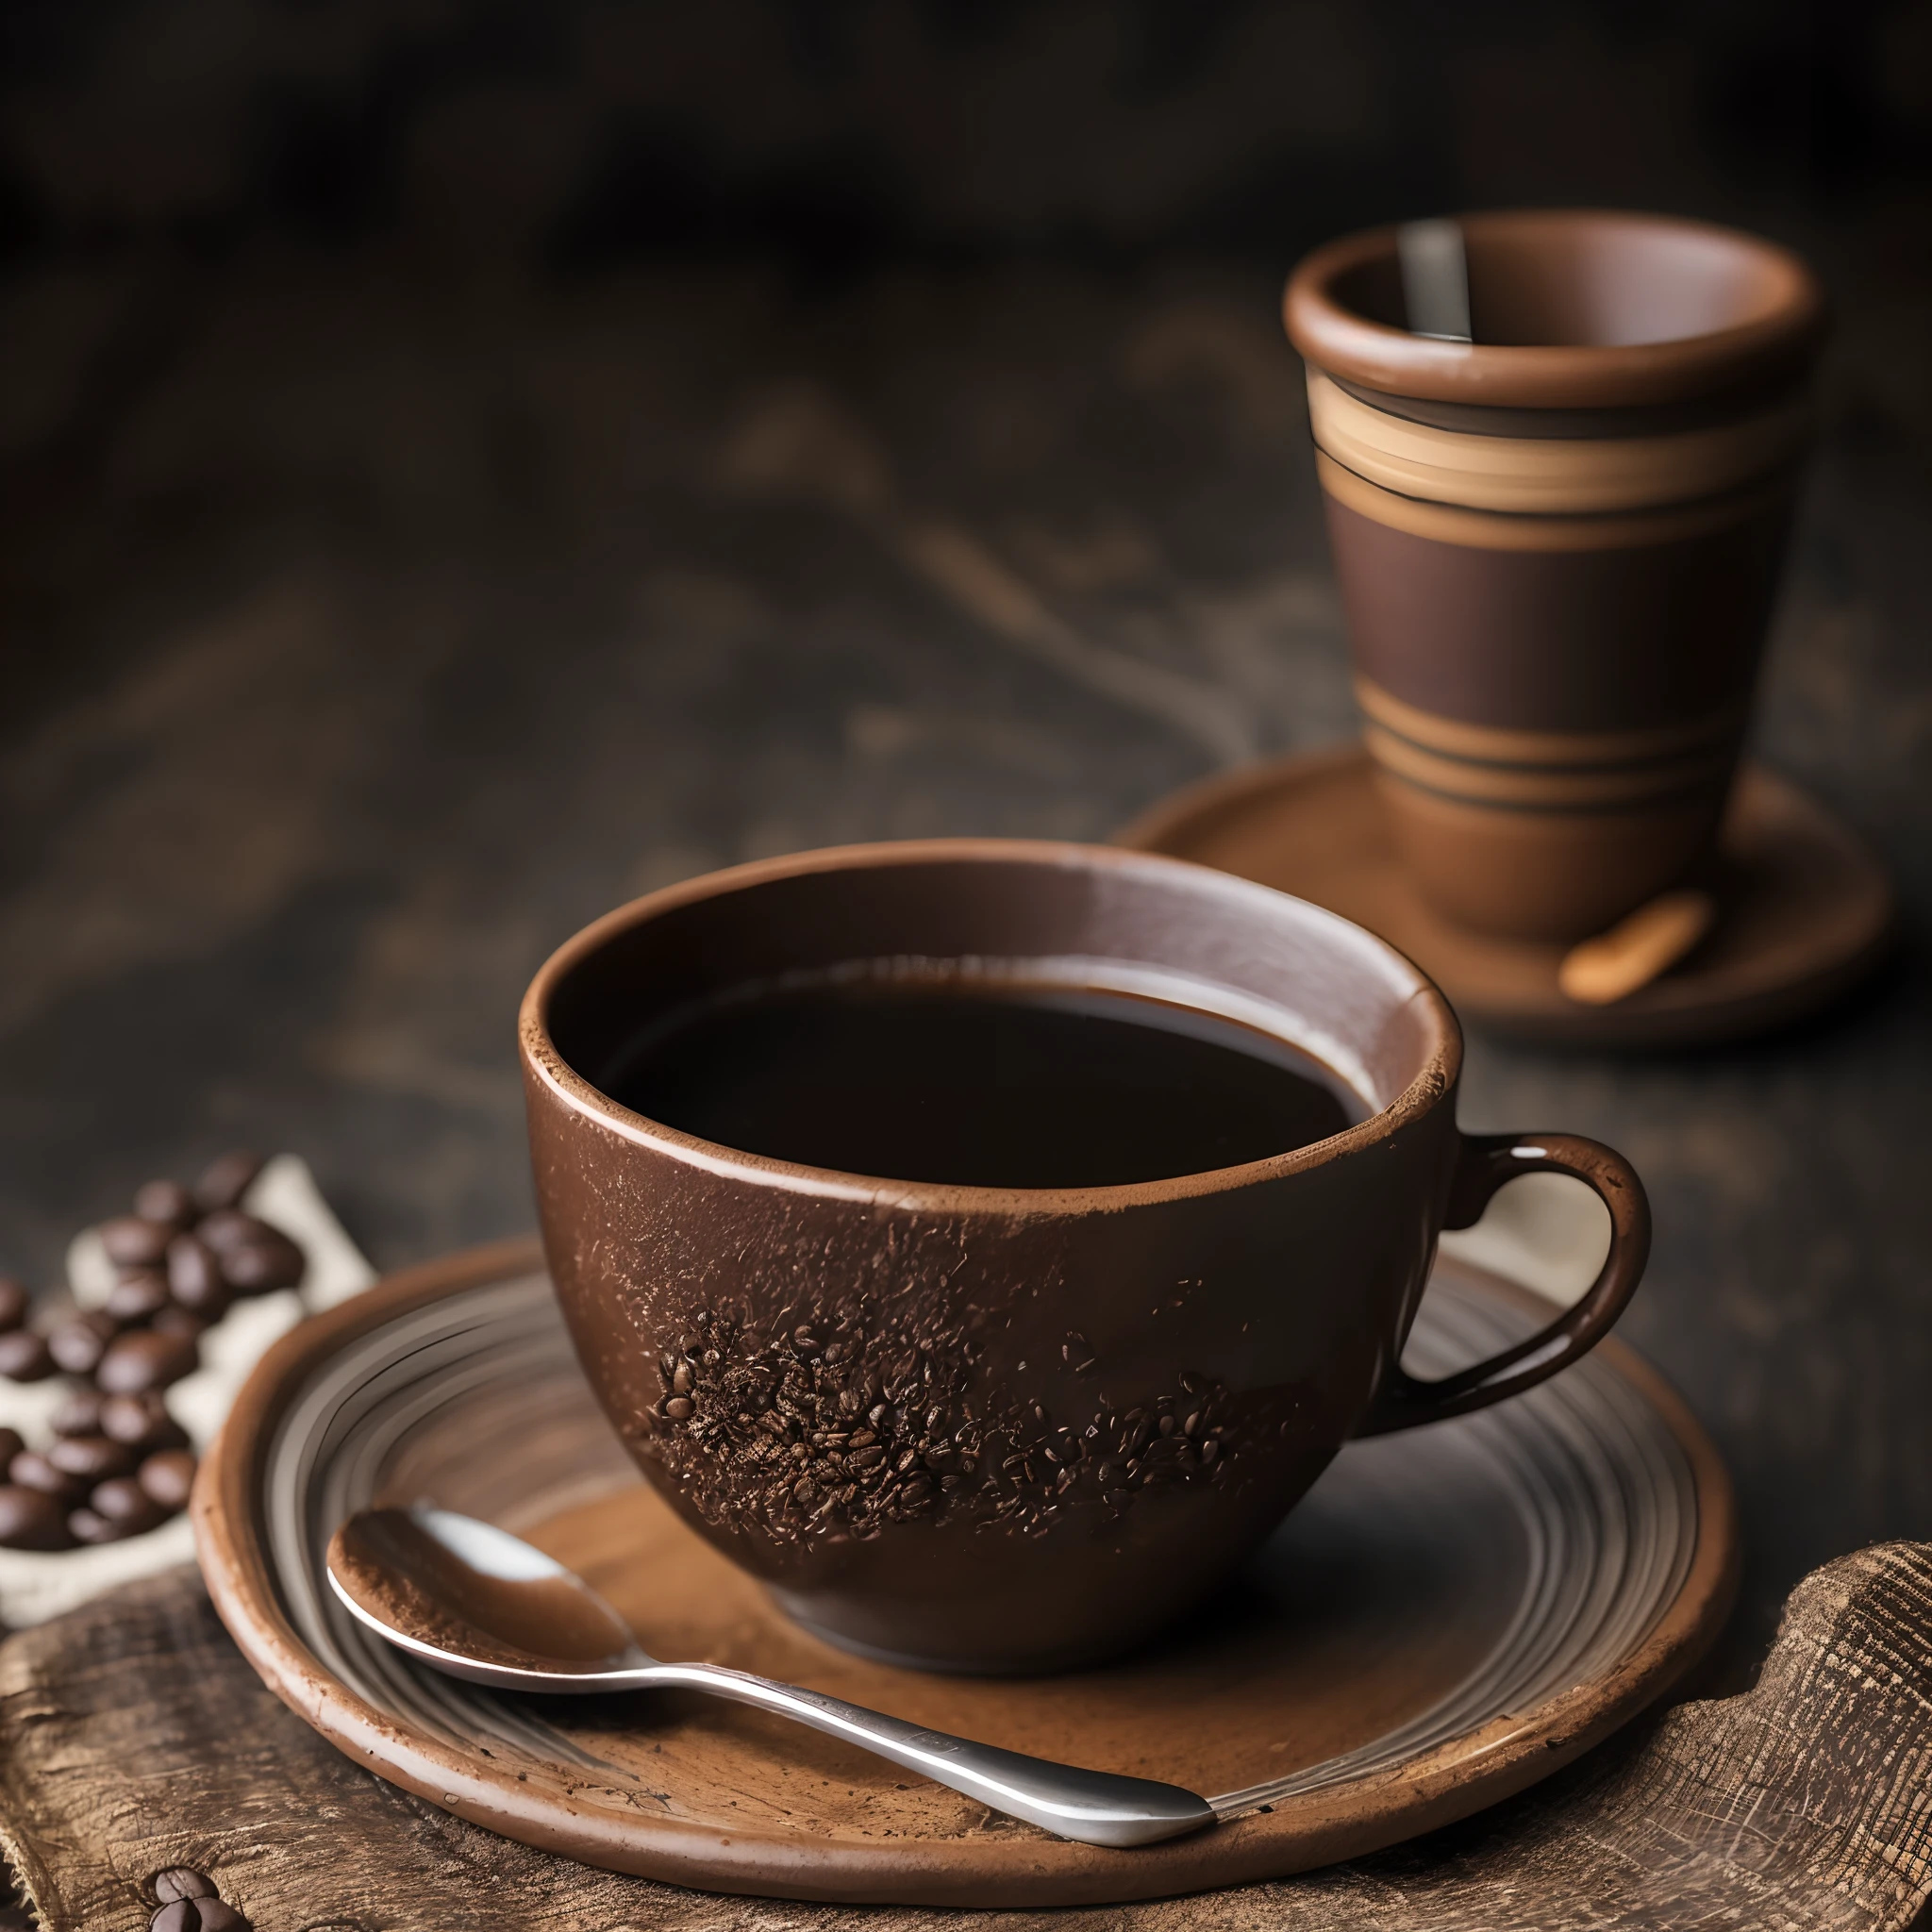 볶은 커피와 콩을 천 위에 펼쳐 놓고 35mm HDR 초현실적인 매크로 카메라로 촬영한 점토 커피 부드러운 연기